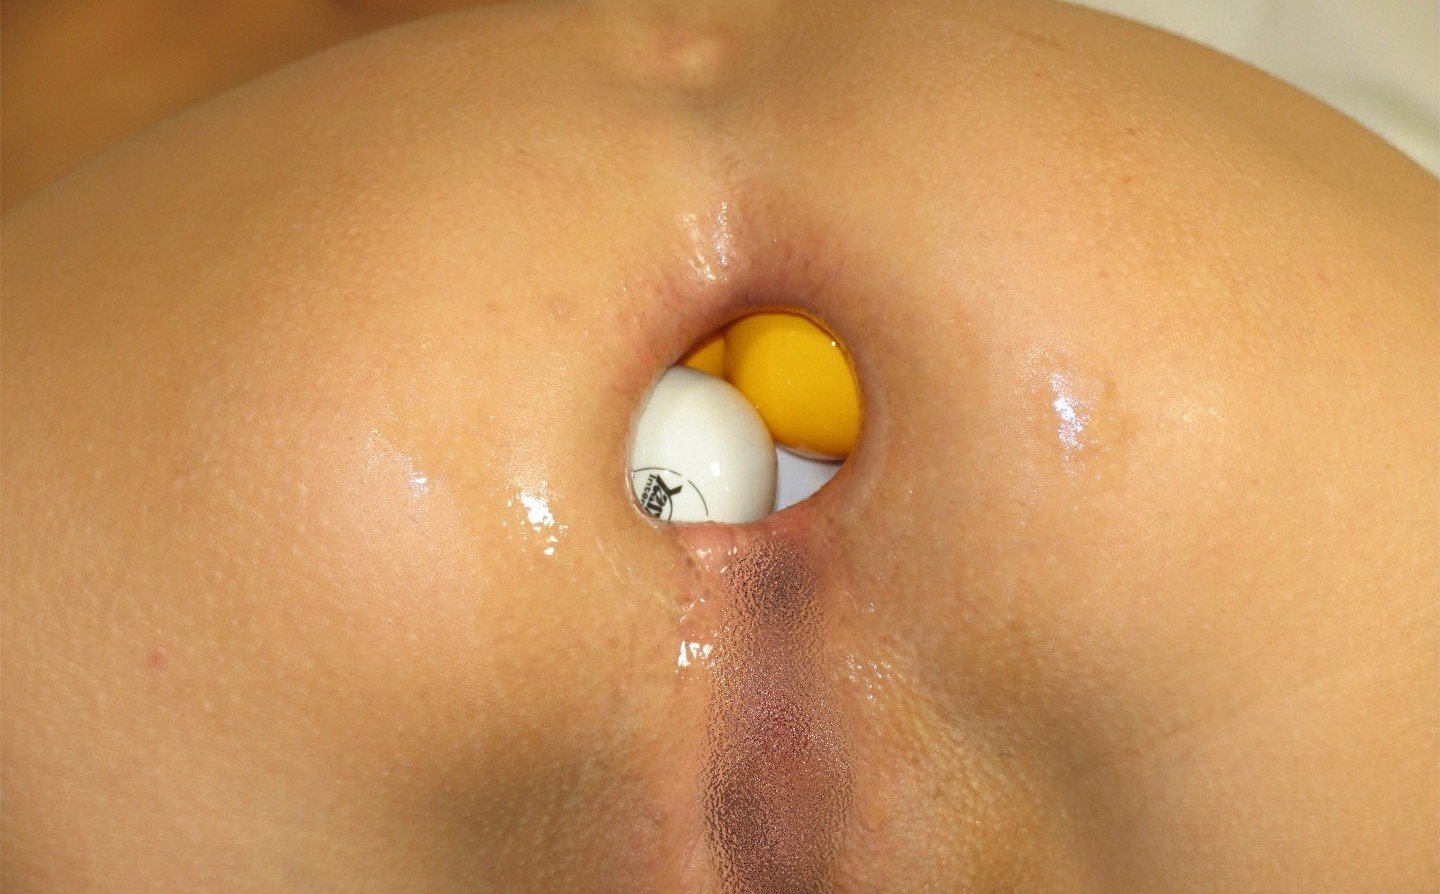 Putting baby oil in anus